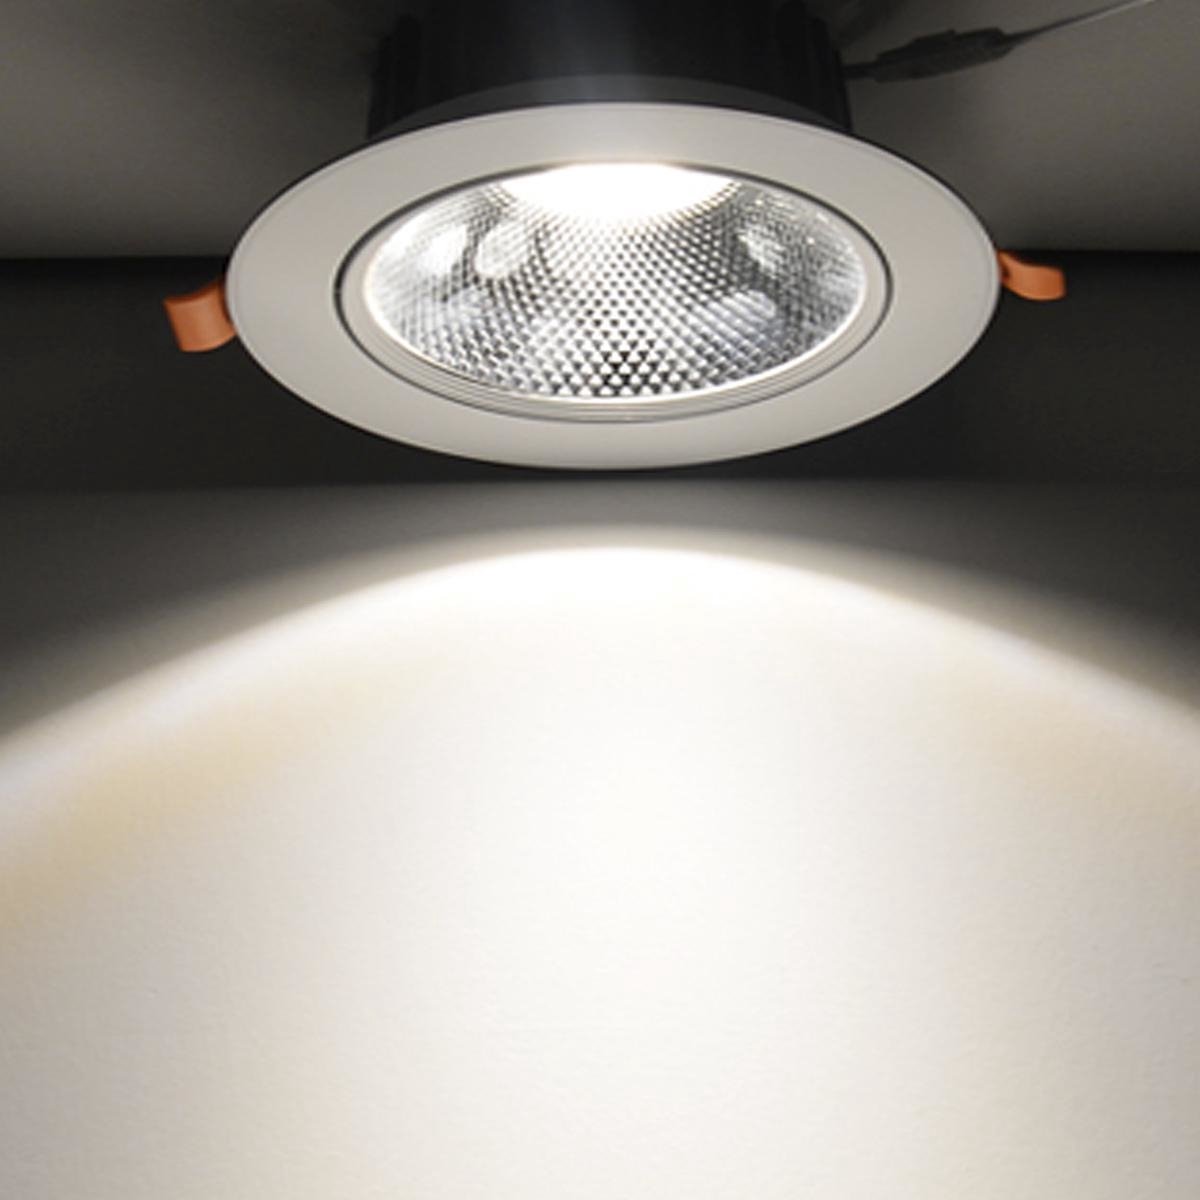 LED inbouwspot Dimbaar - 7W vervangt 70W - 4000K helder wit licht - Kantelbaar